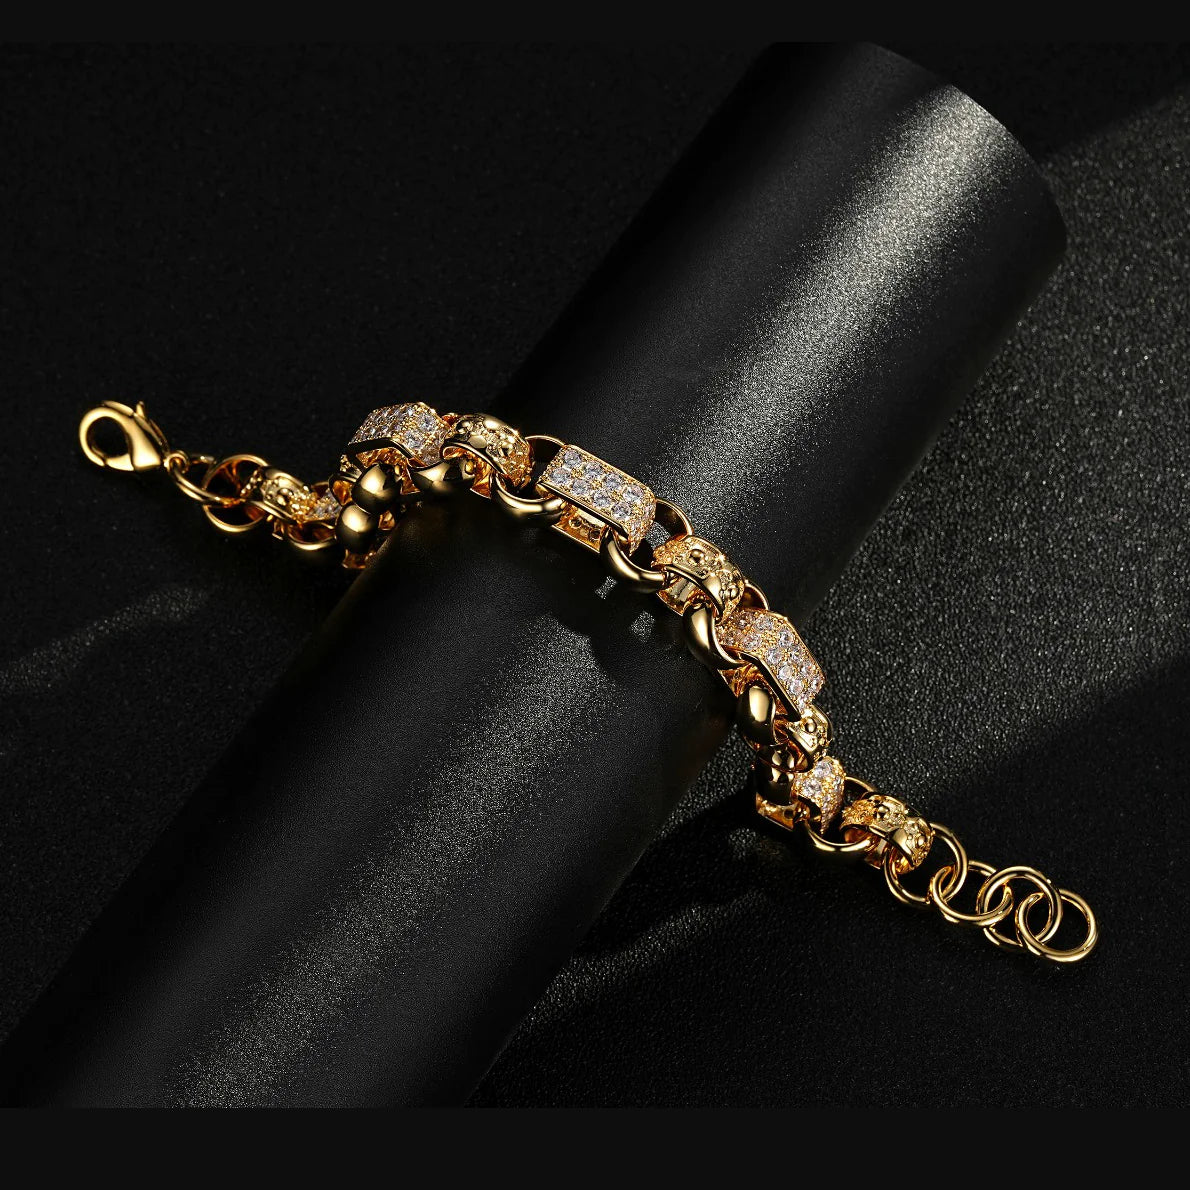 Beautiful Expensive Gold Bracelets Isolated on White Stock Photo - Image of  elegance, isolated: 37683252